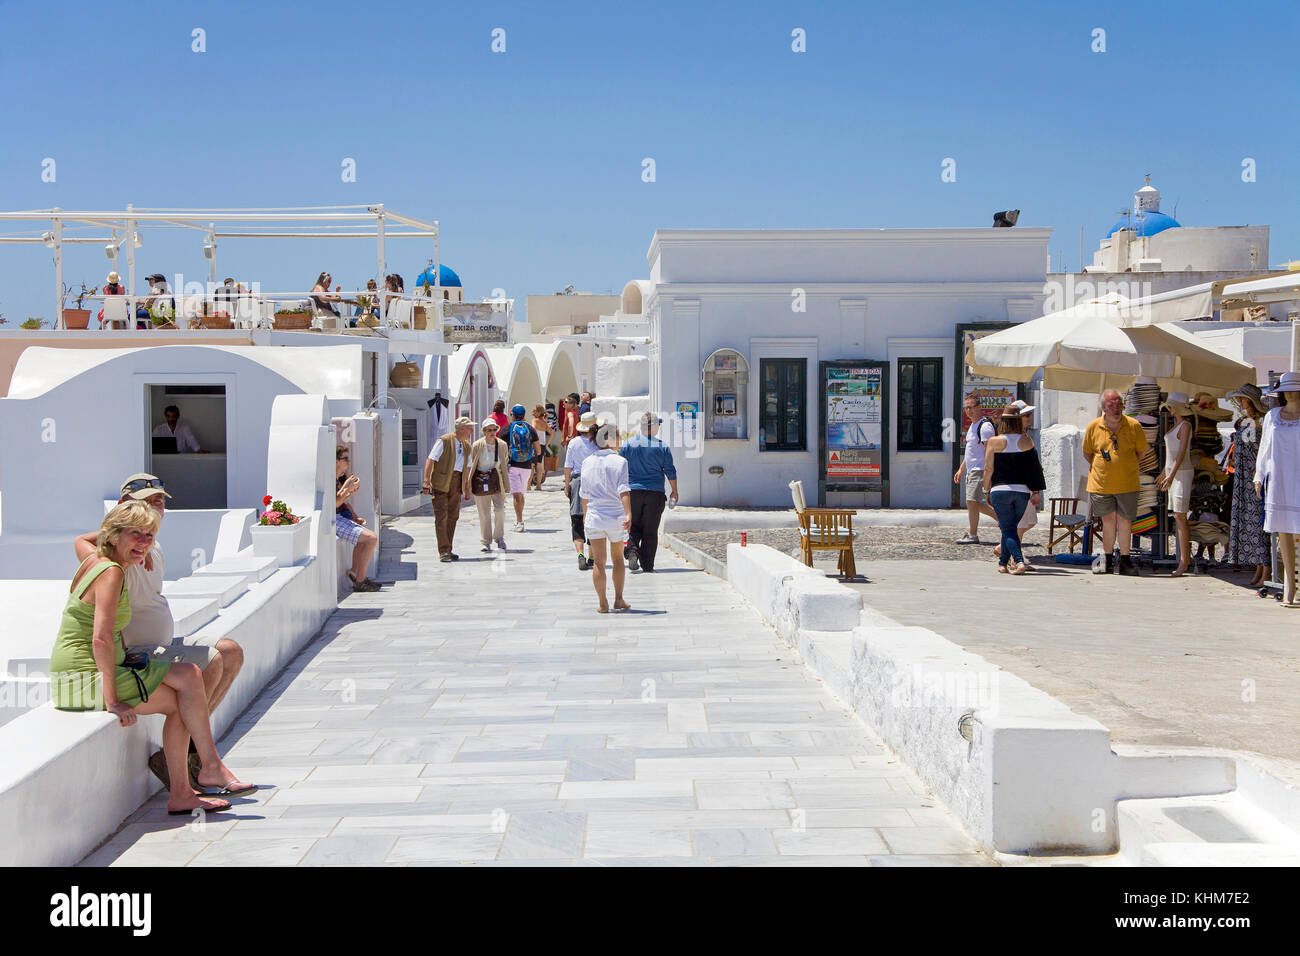 Promenade du bord du cratère marbré, commerçant à Oia, Santorin, Cyclades, l'île de la mer Égée, Grèce Banque D'Images